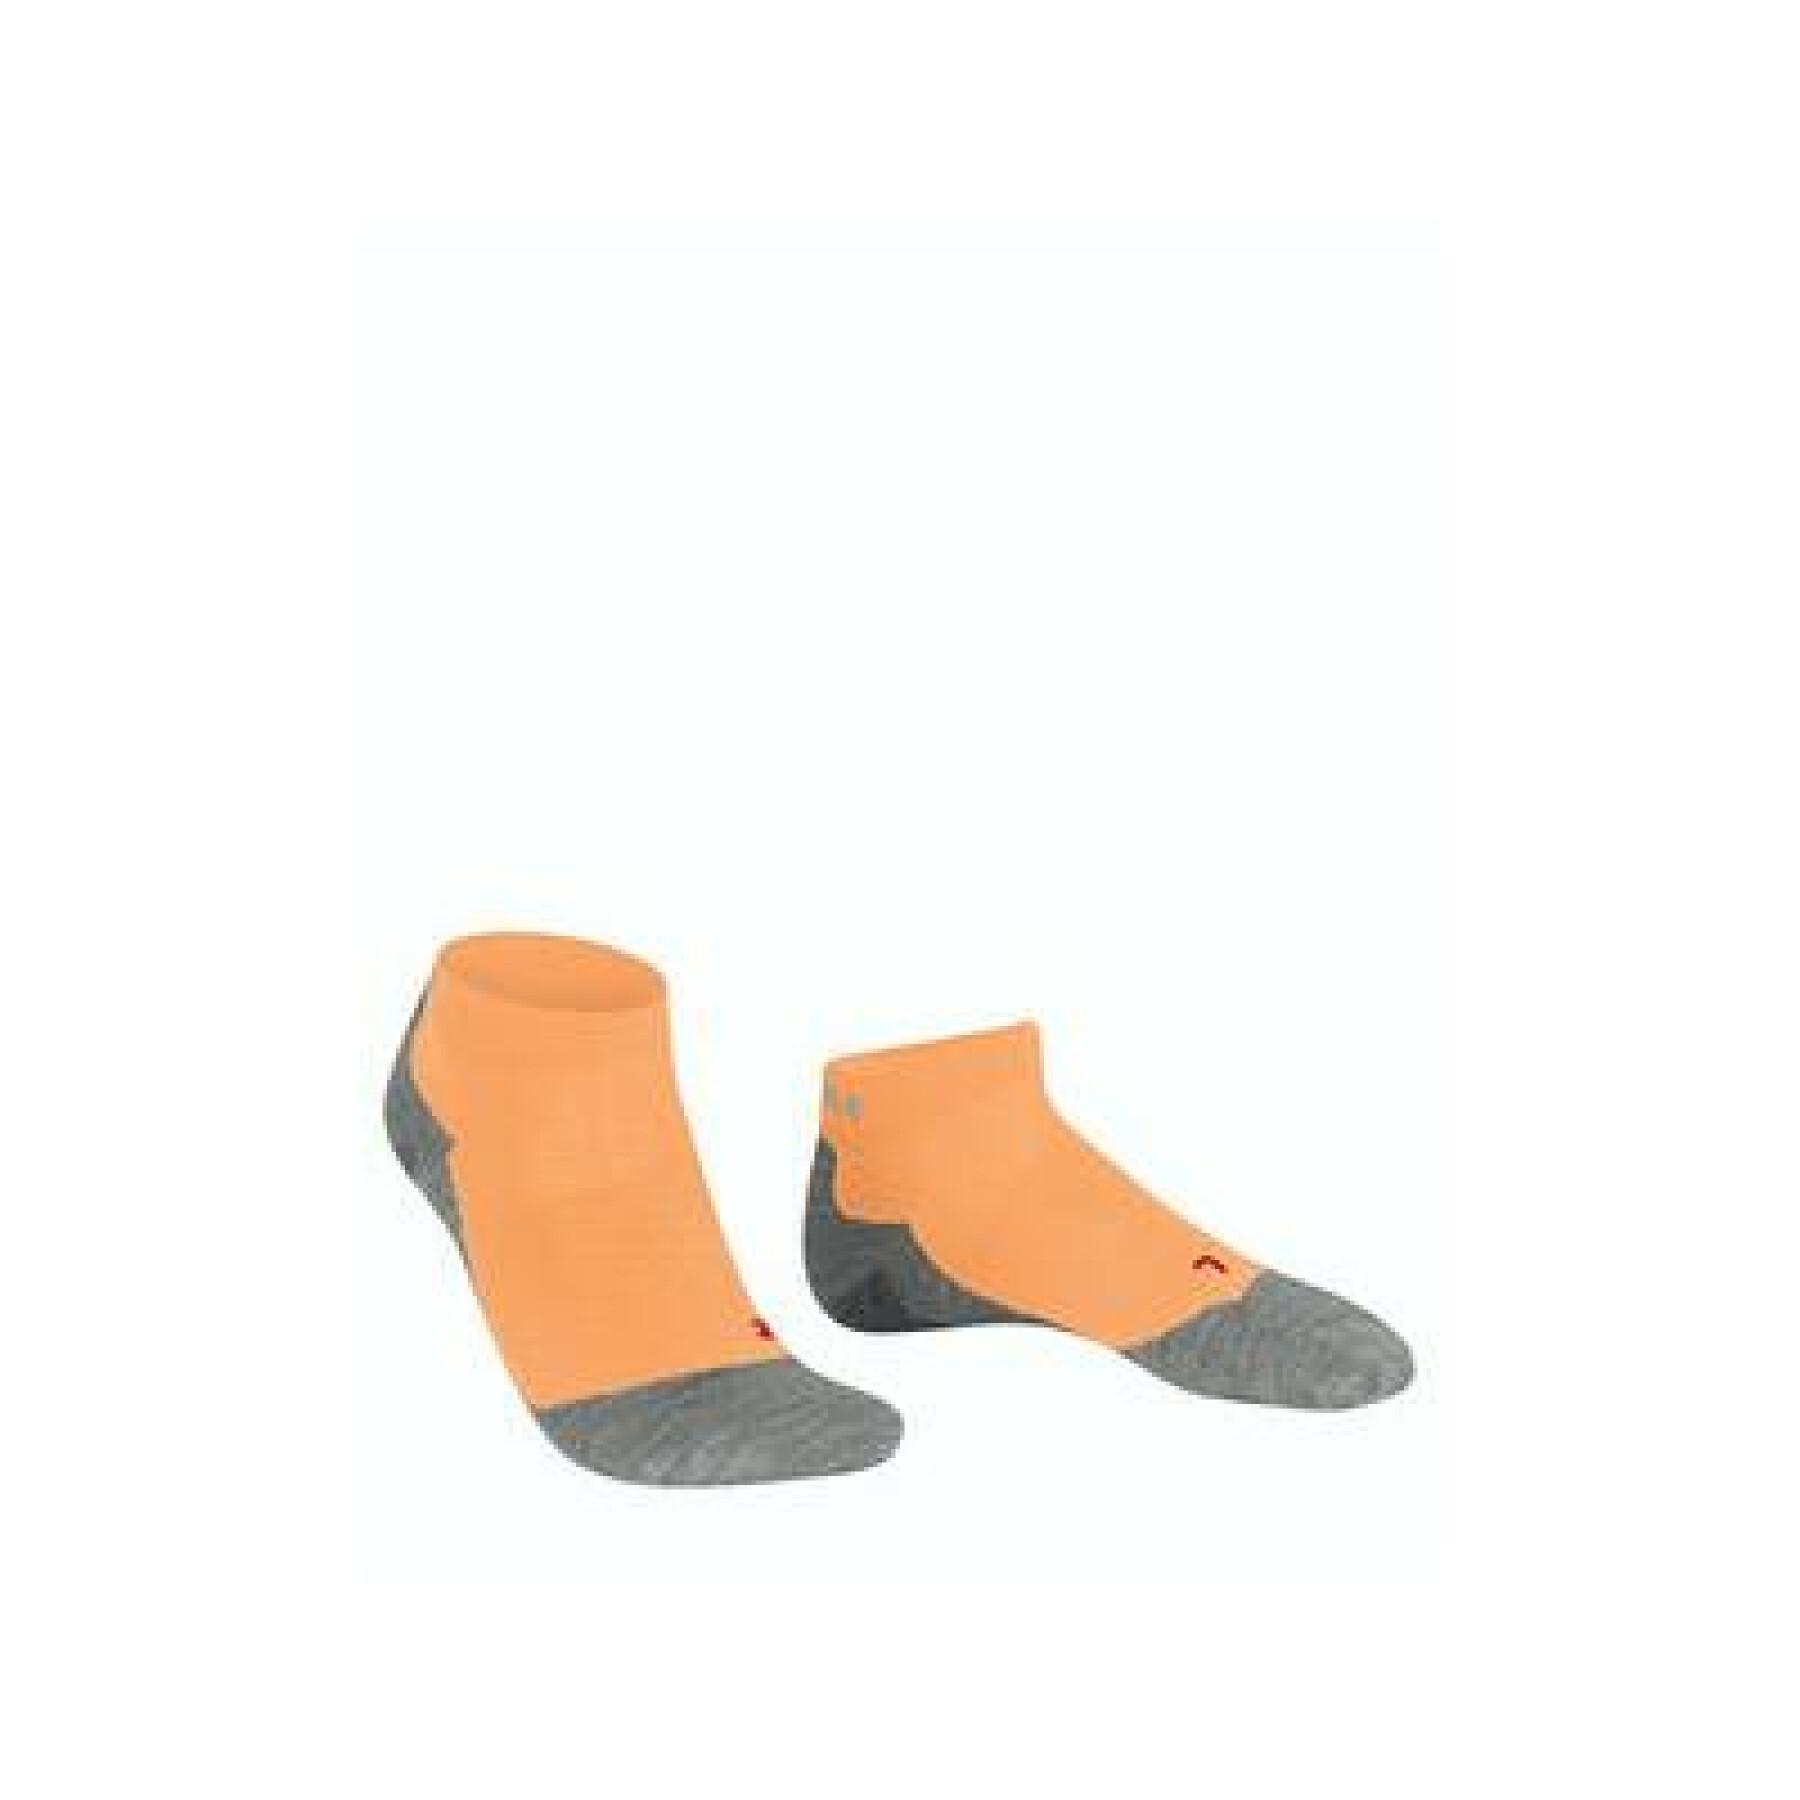 Women's short socks Falke Ru5 Lightweight